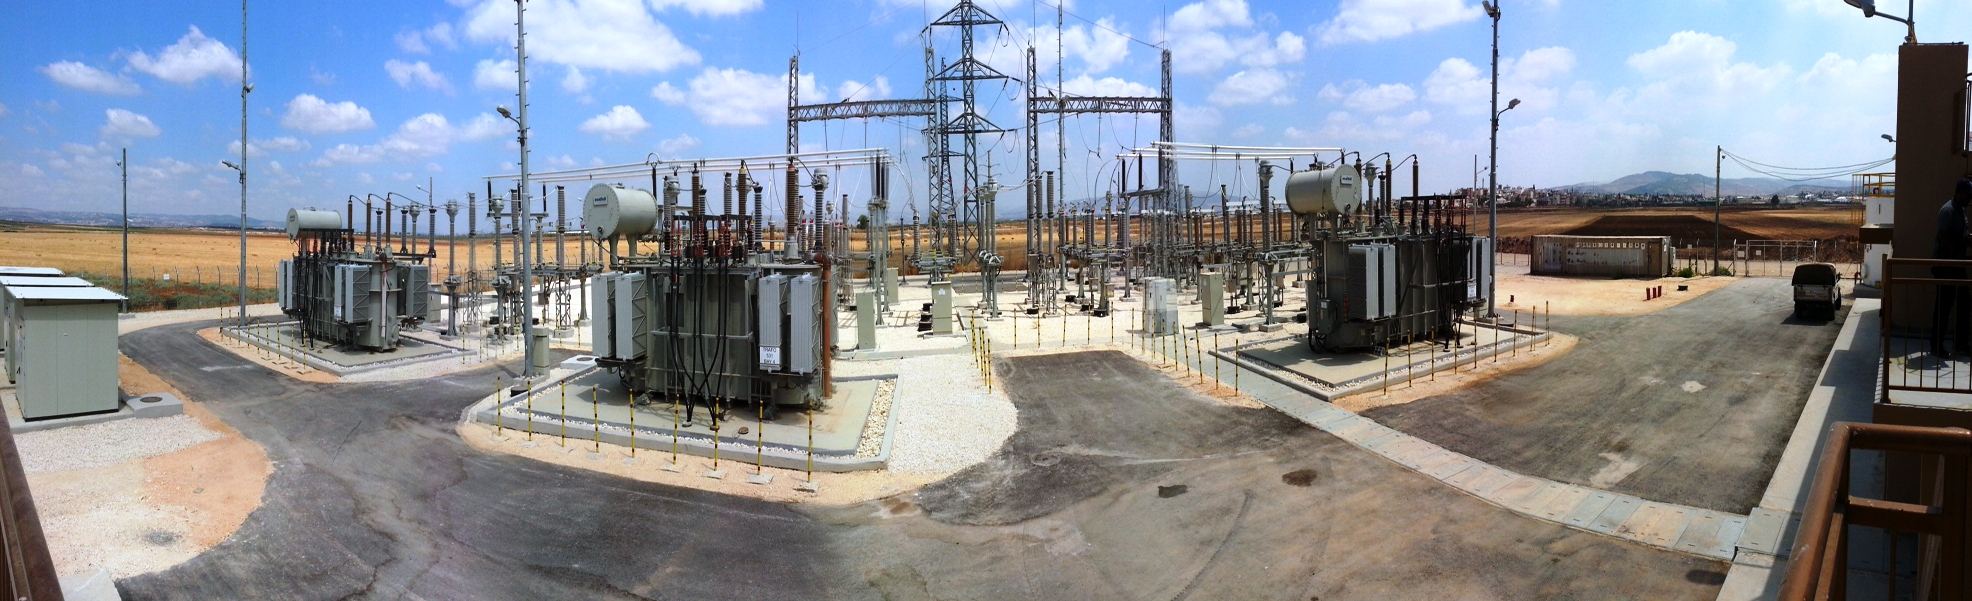 صورة بانورما لمحطة تحويل كهرباء جنين (الجلمة)